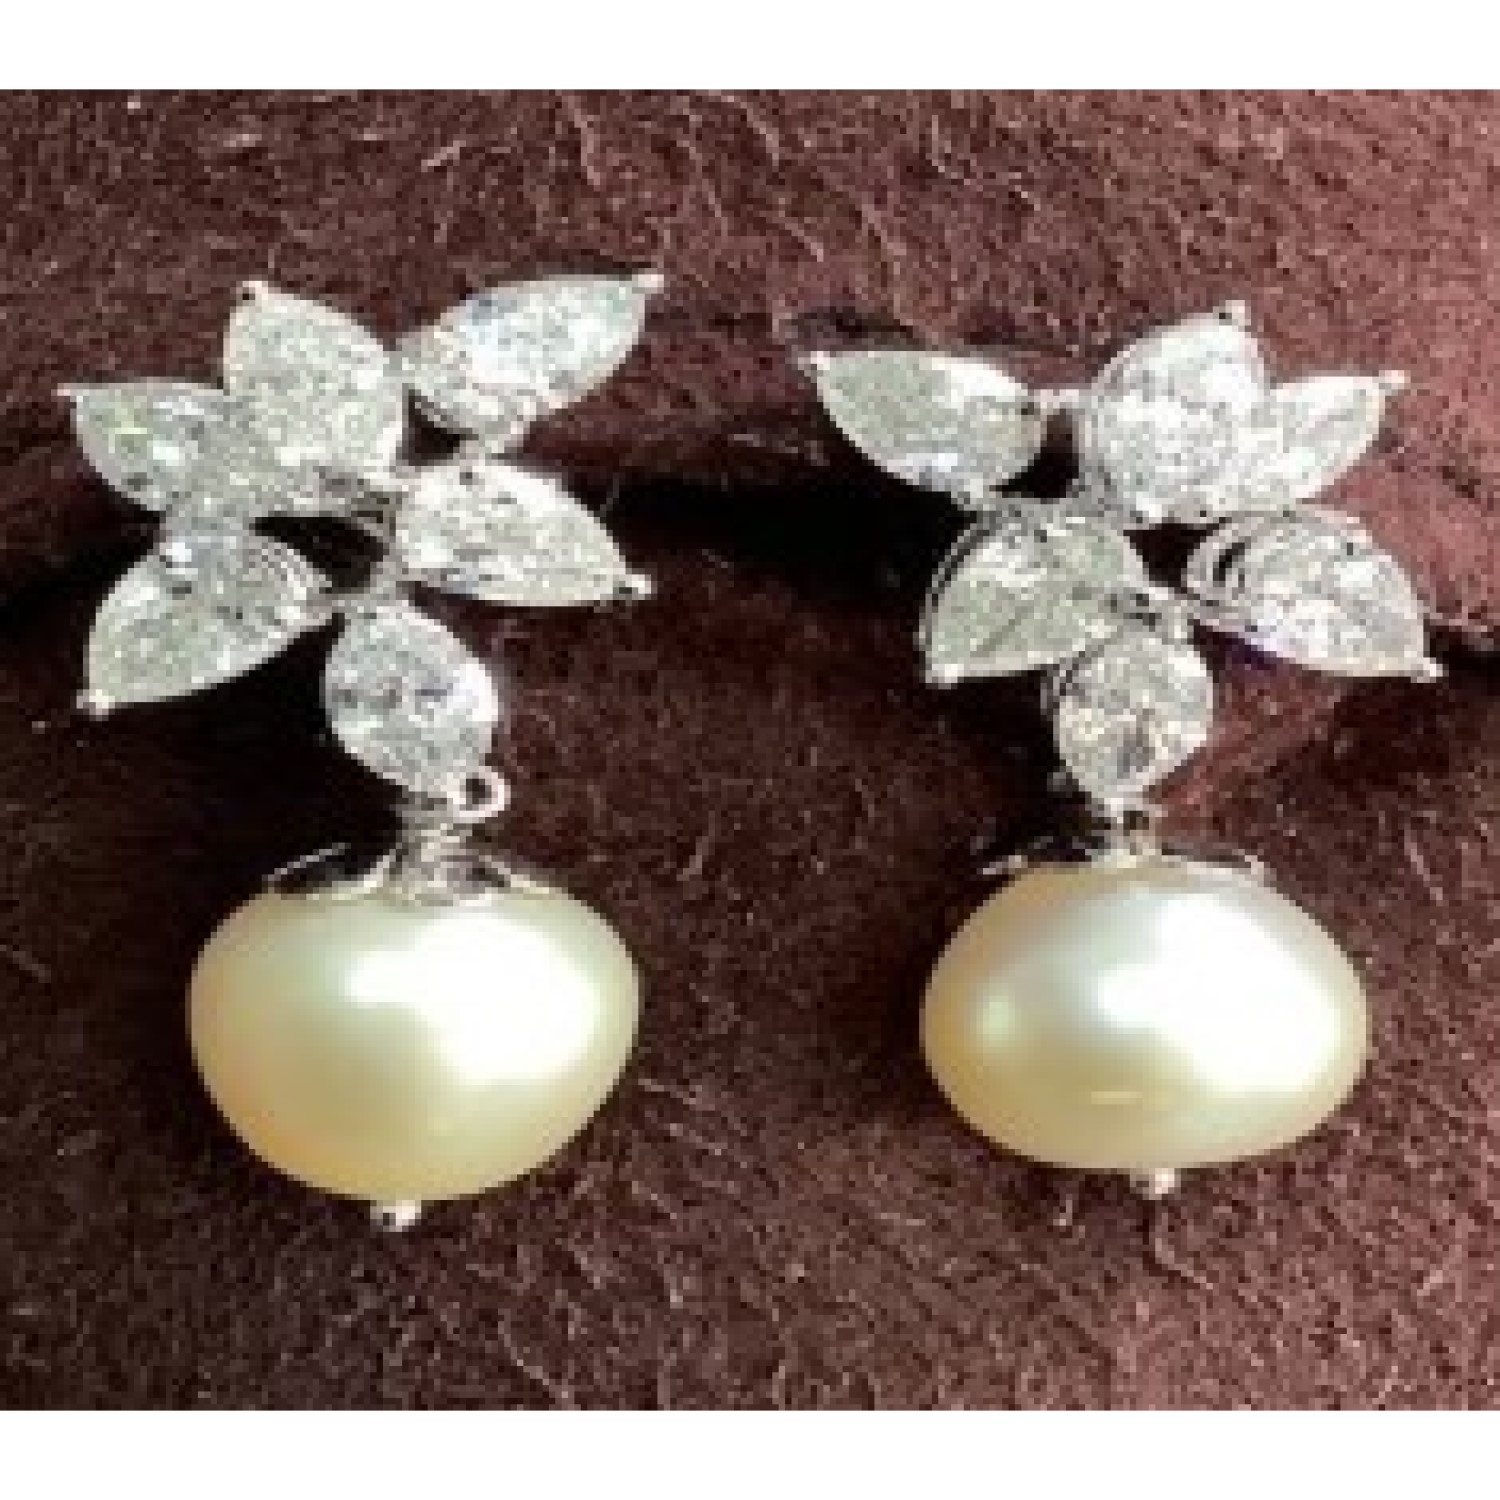 17.66 Carat Natural Drop Diamond Earrings